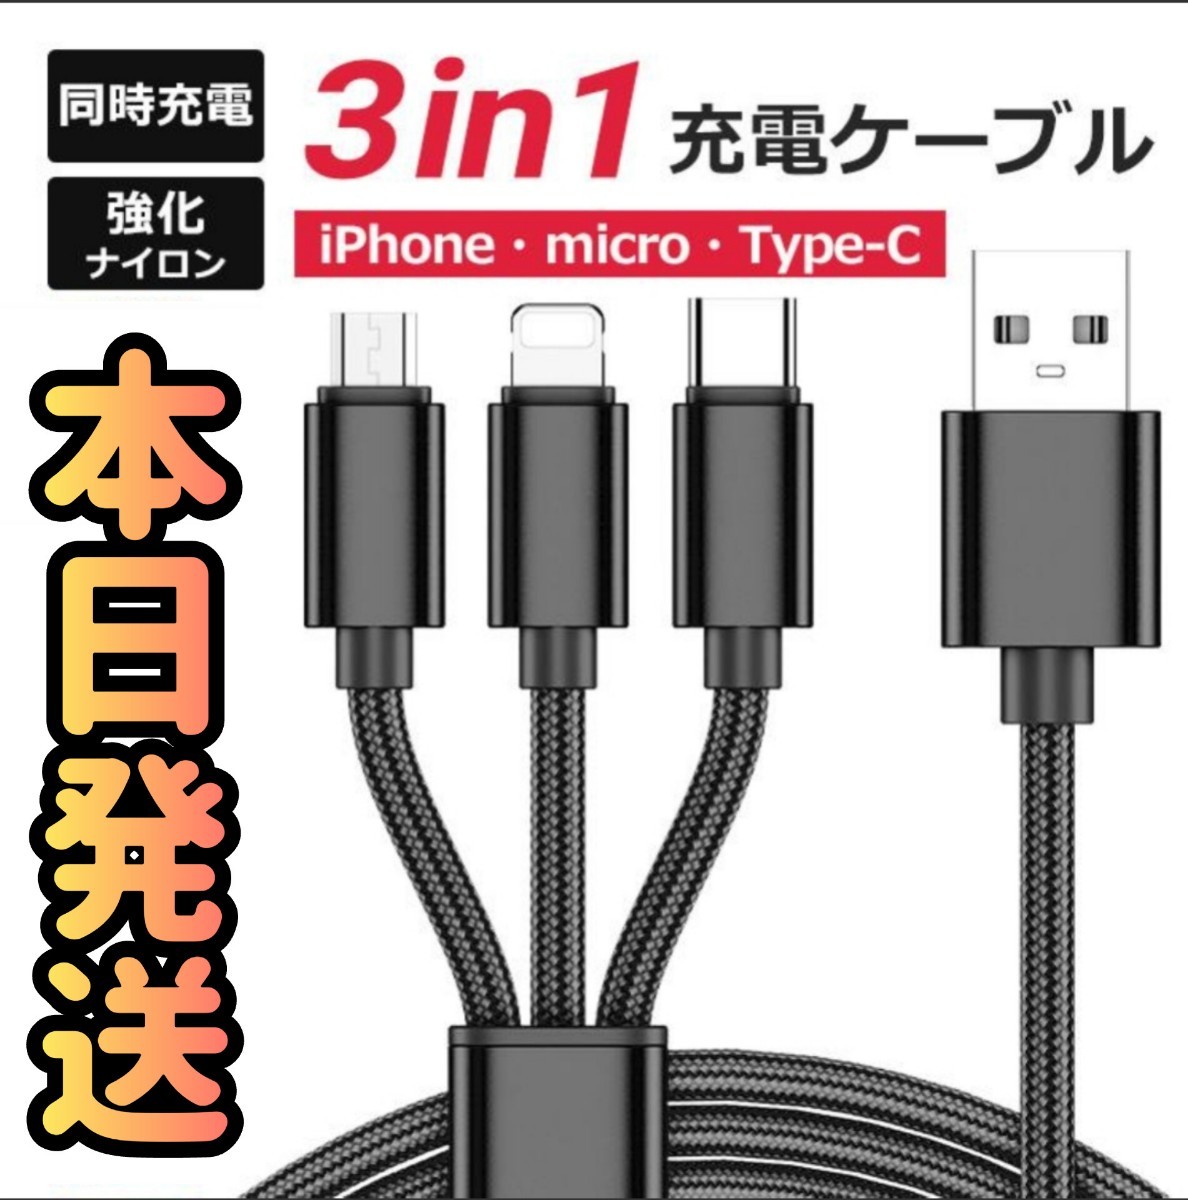 3in1ケーブル ブラック 3in1 巻き取り式 急速充電 Lightning Type-C microUSB 3in1 充電ケーブル ライトニング 充電 USBケーブル_画像1